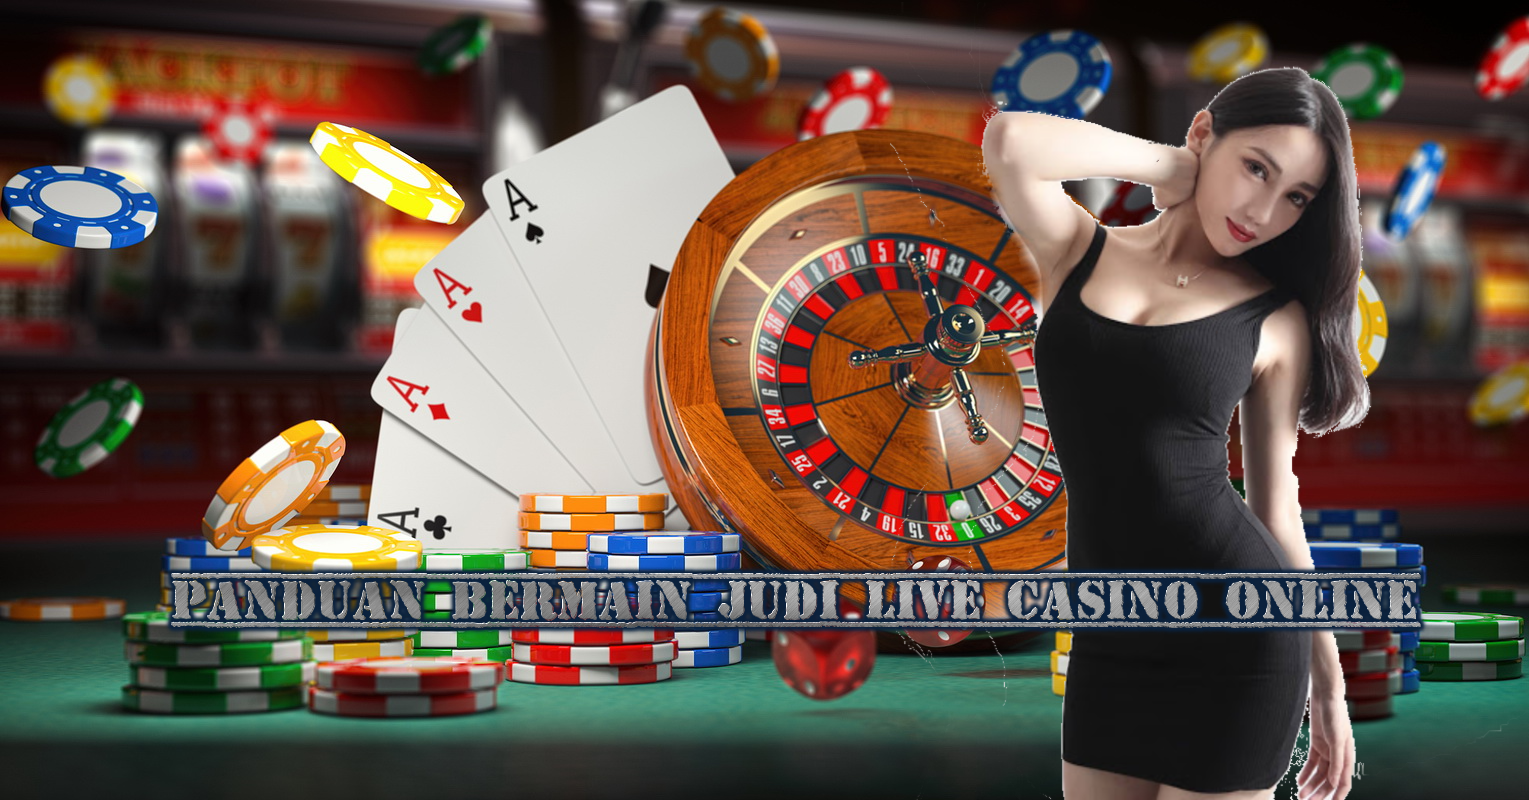 Panduan Bermain Judi Live Casino Online